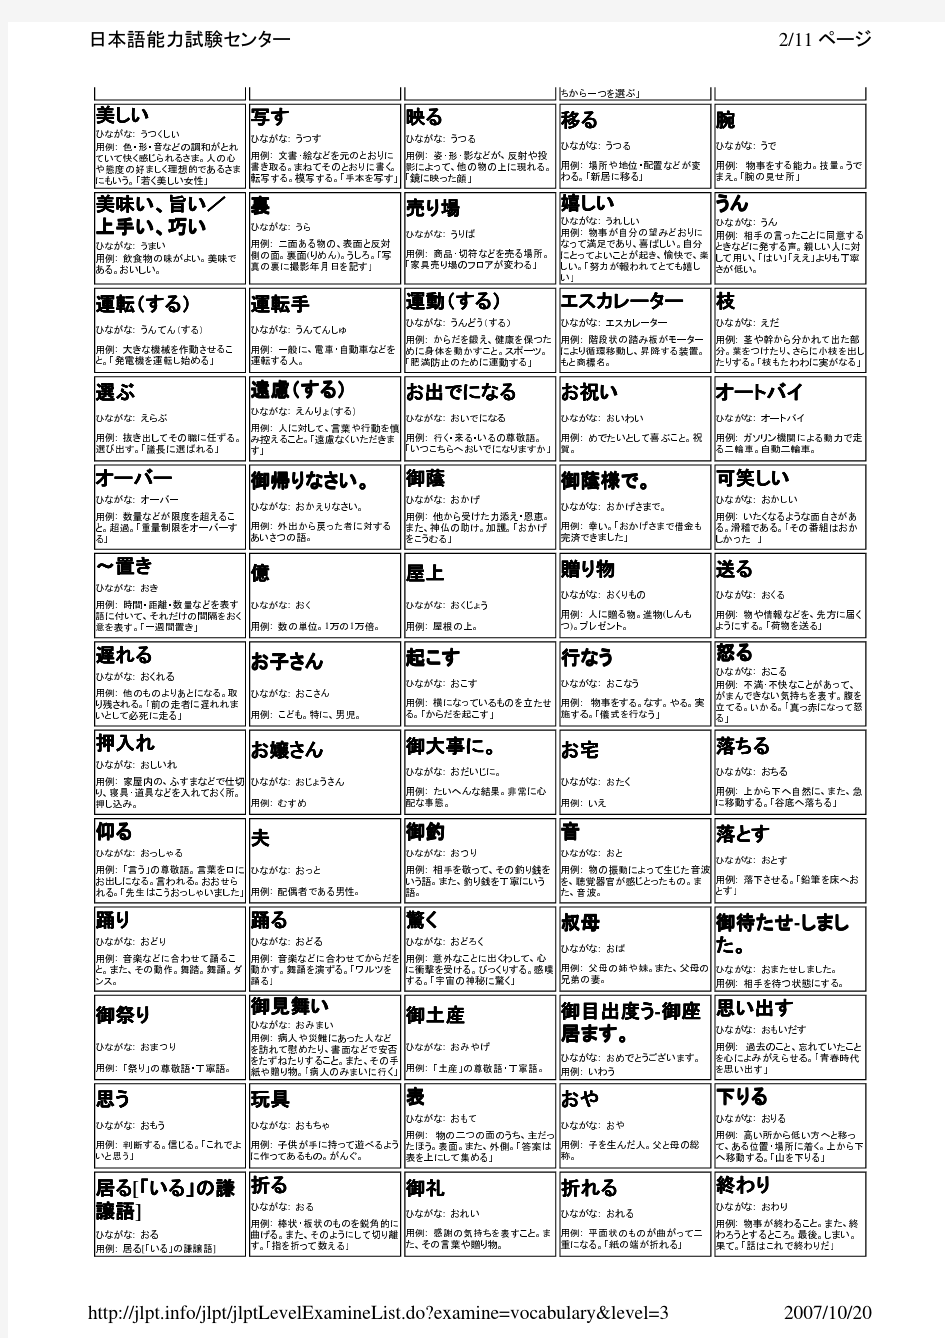 日语三级词汇总览(日语能力考试中心官方资料)